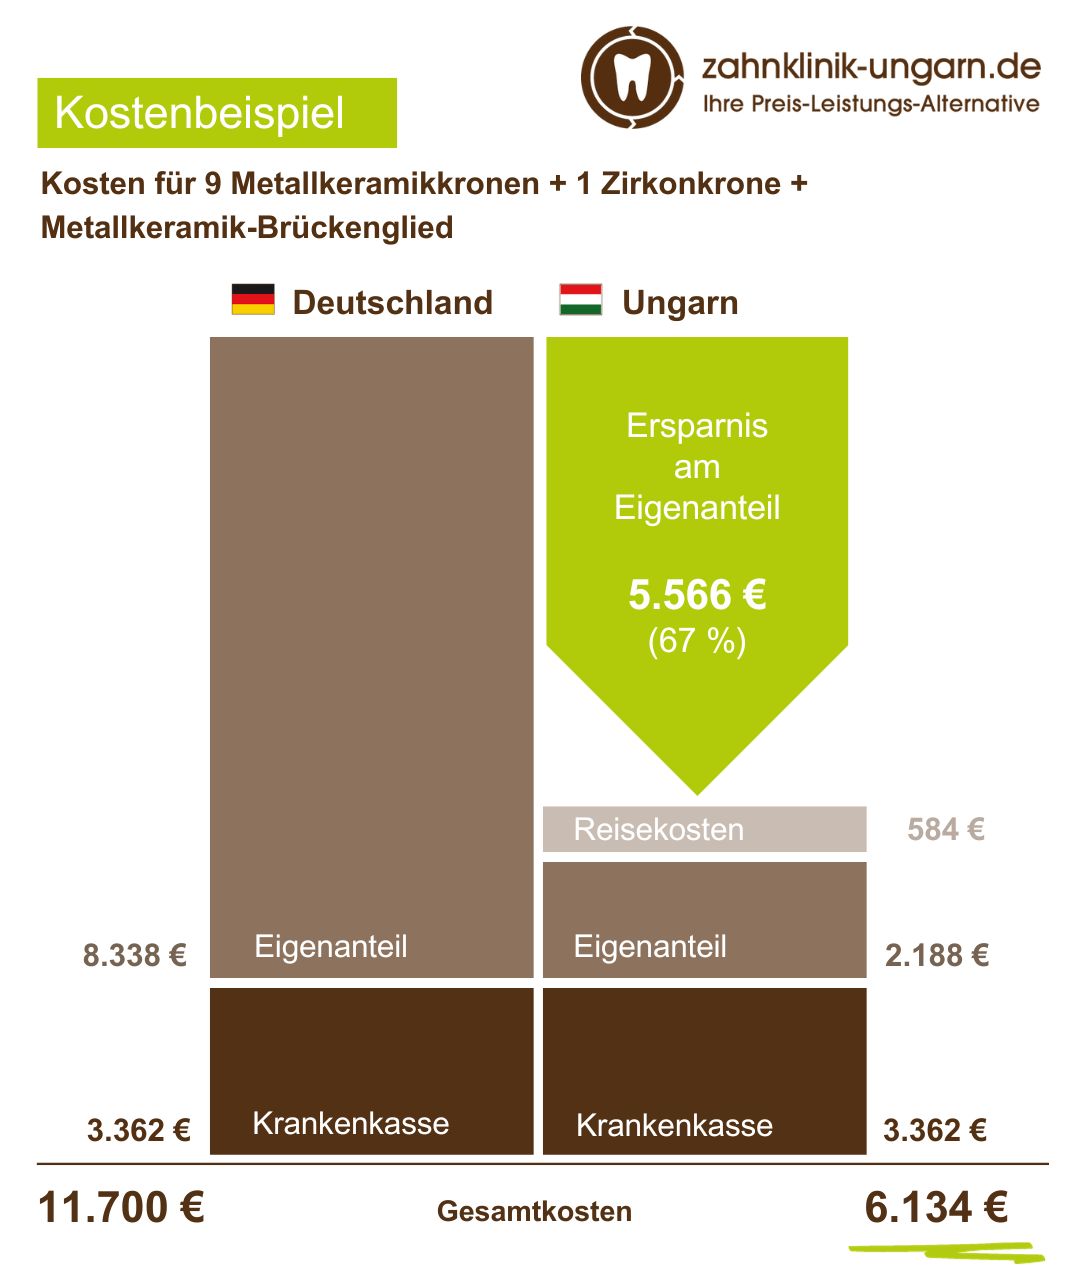 Kosten für 9 Metallkeramikkronen + 1 Zirkonkrone + Metallkeramik-Brückenglied, Schaubild mit Kostenvergleich Ungarn und Deutschland